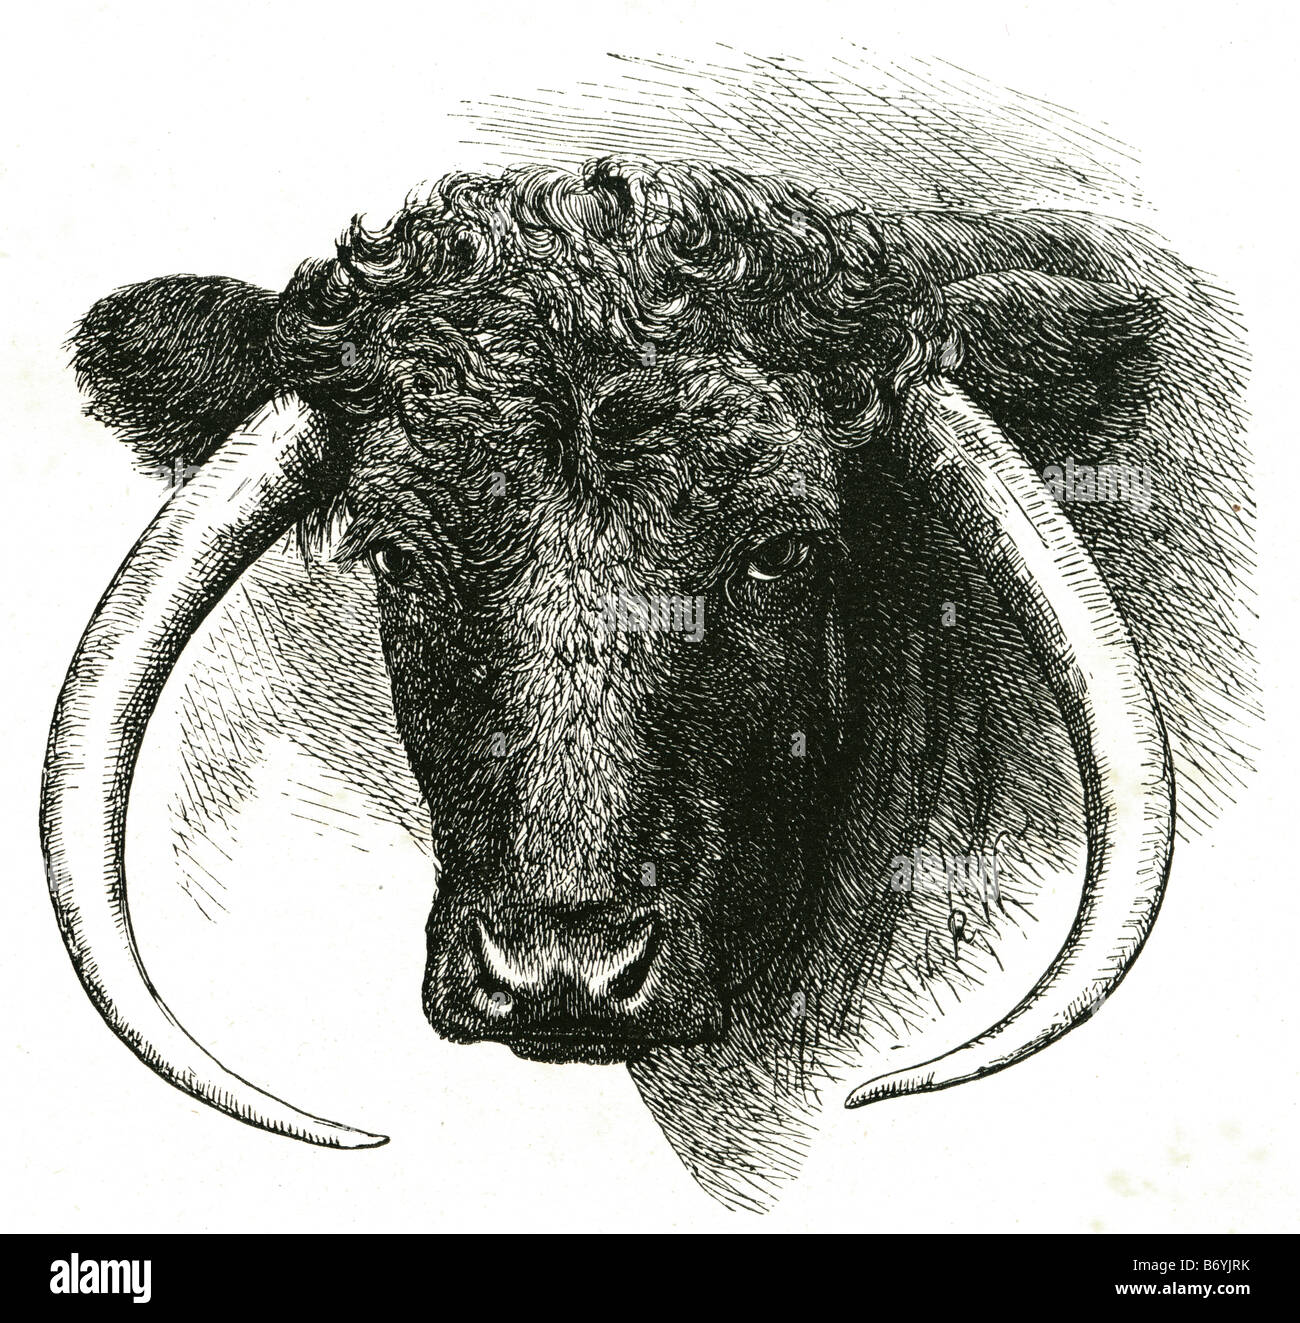 Bull la subfamilia bovinae biológica incluye un grupo diverso de 10 géneros de ungulados de tamaño mediano a grande, incluyendo domest Foto de stock